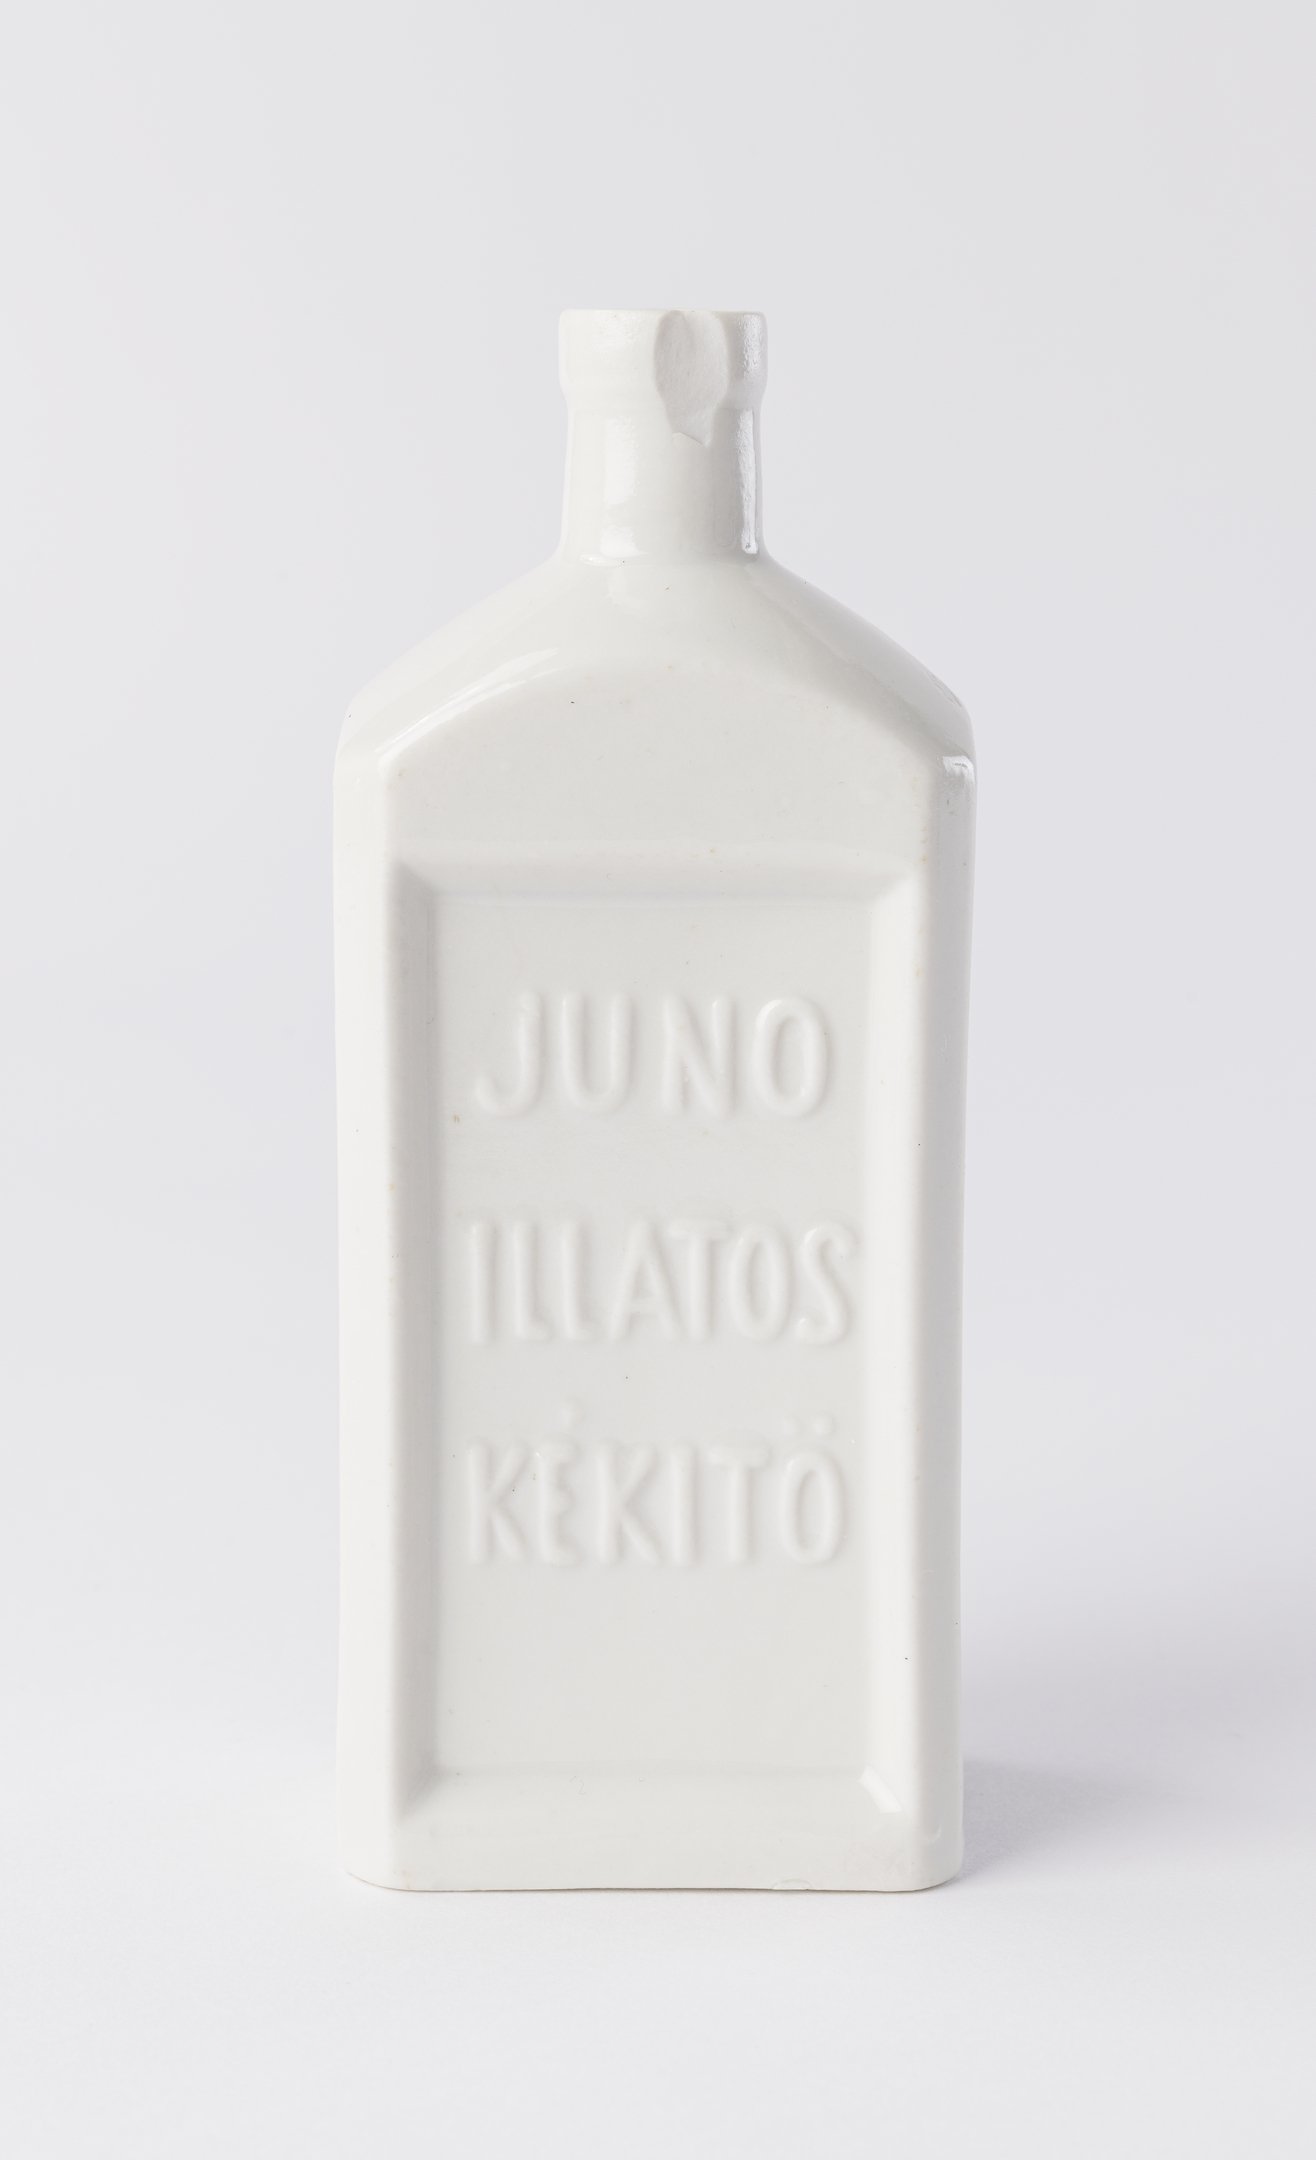 Juno Illatos Kékítő üveg (Magyar Környezetvédelmi és Vízügyi Múzeum - Duna Múzeum CC BY-NC-SA)